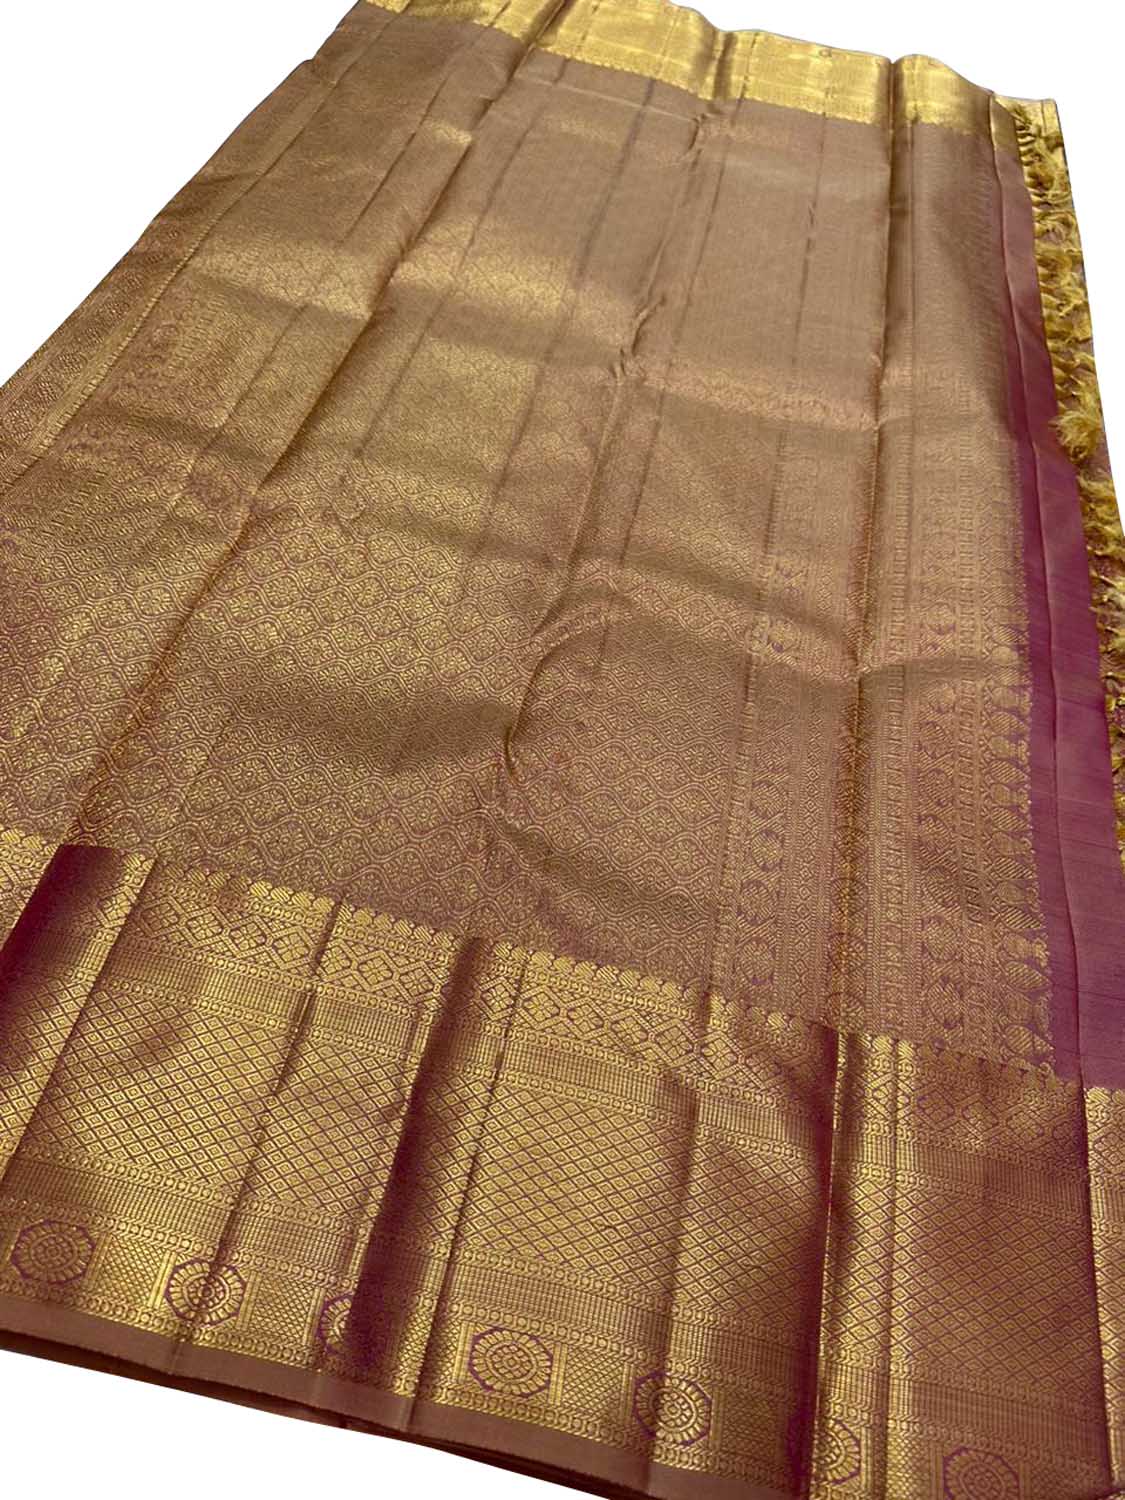 Exquisite Golden Kanjeevaram Handloom Pure Silk Saree: Timeless Elegance - Luxurion World